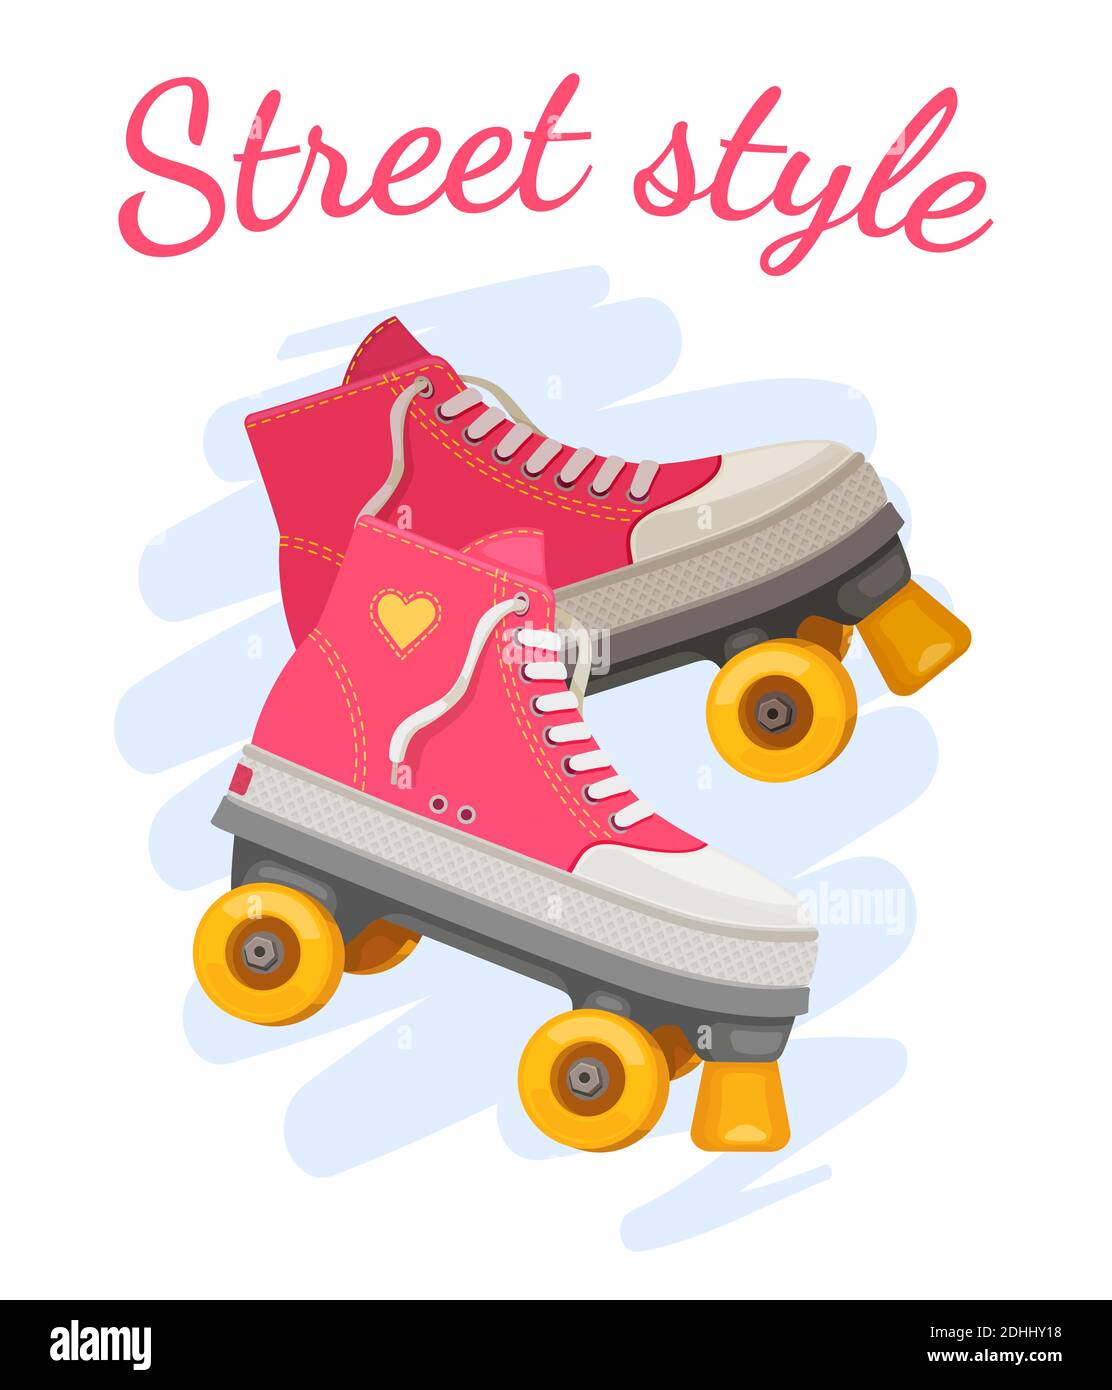 Imprimé Roller Girl. Les rouleaux roses tendance patinent dans un style de rue avec coeur et texte. Mode rétro été pour filles. Motif vectoriel de t-shirt positif Illustration de Vecteur